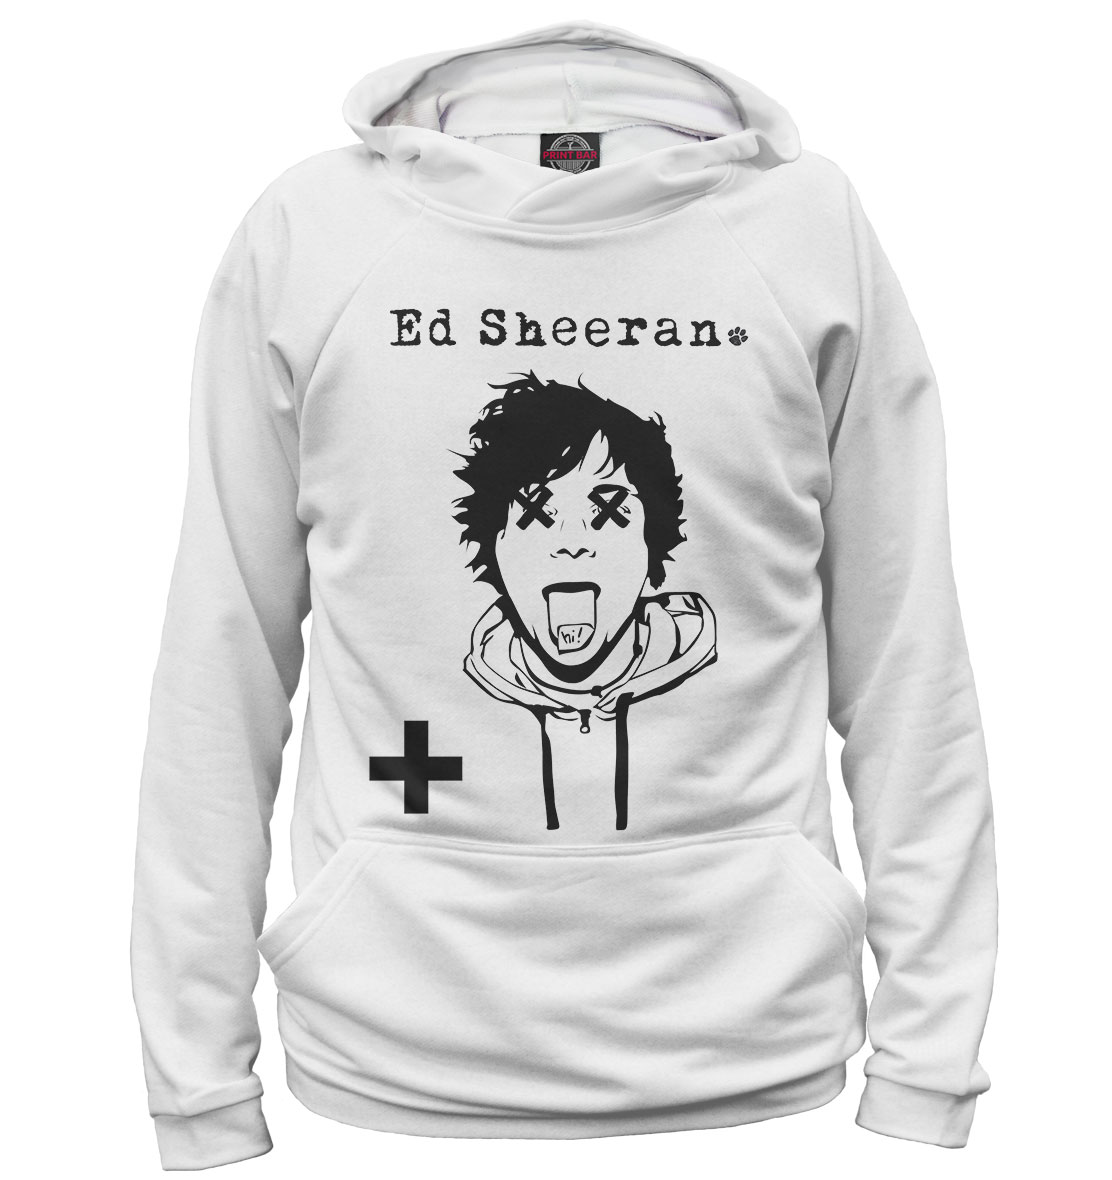 

Ed Sheeran